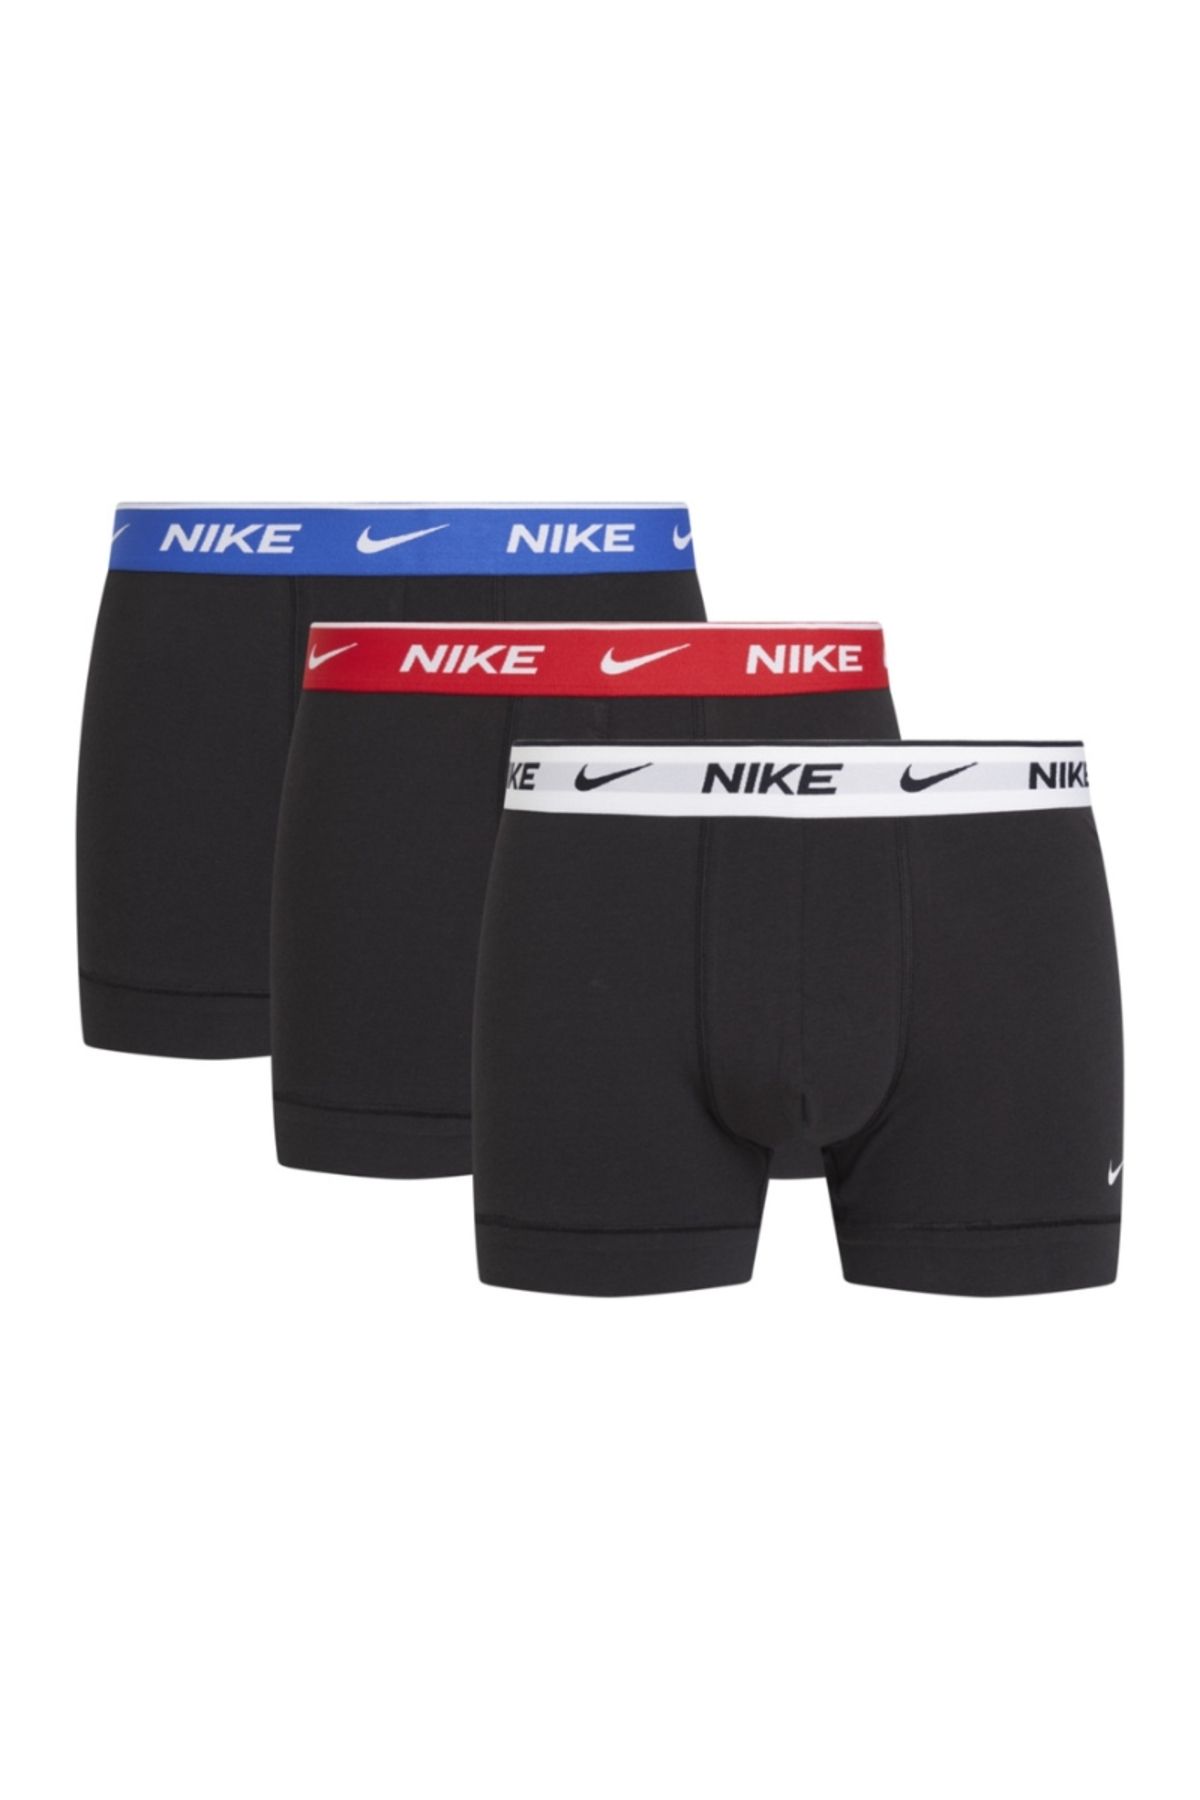 Nike Erkek Siyah Boxer 0000ke10085ın-siyah